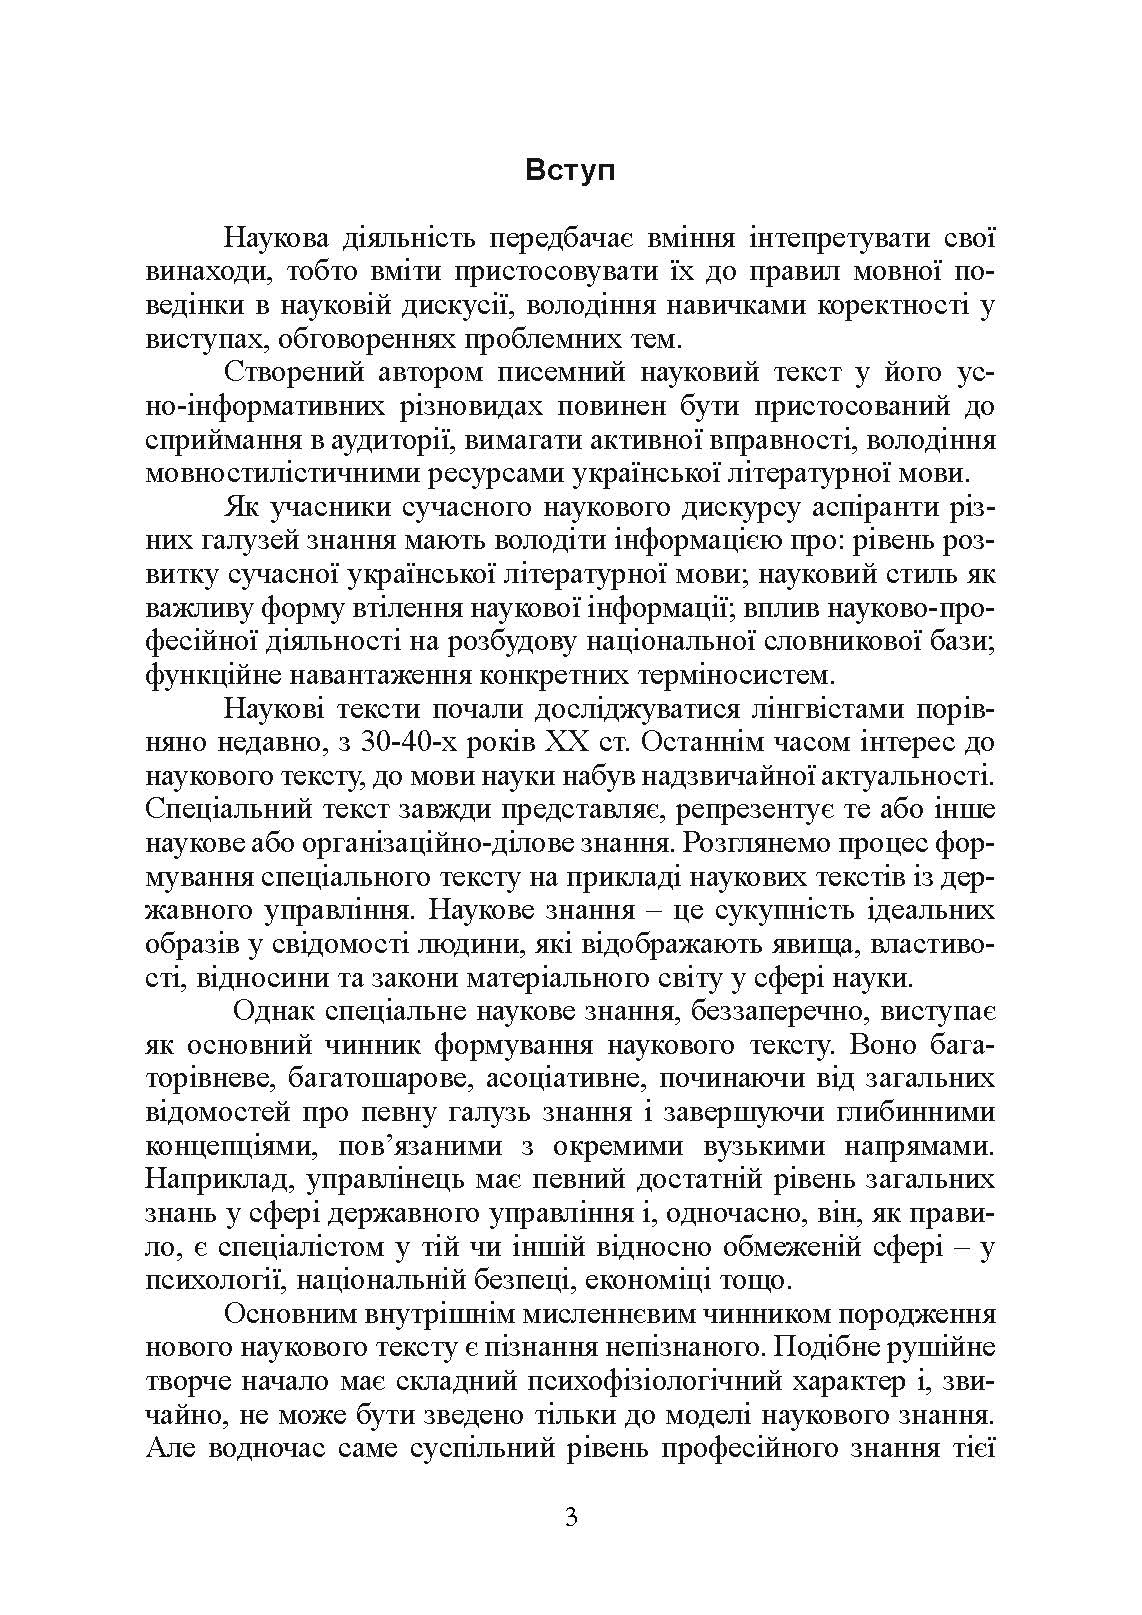 Учебная литература. Автор — І. М. Плотницька. 